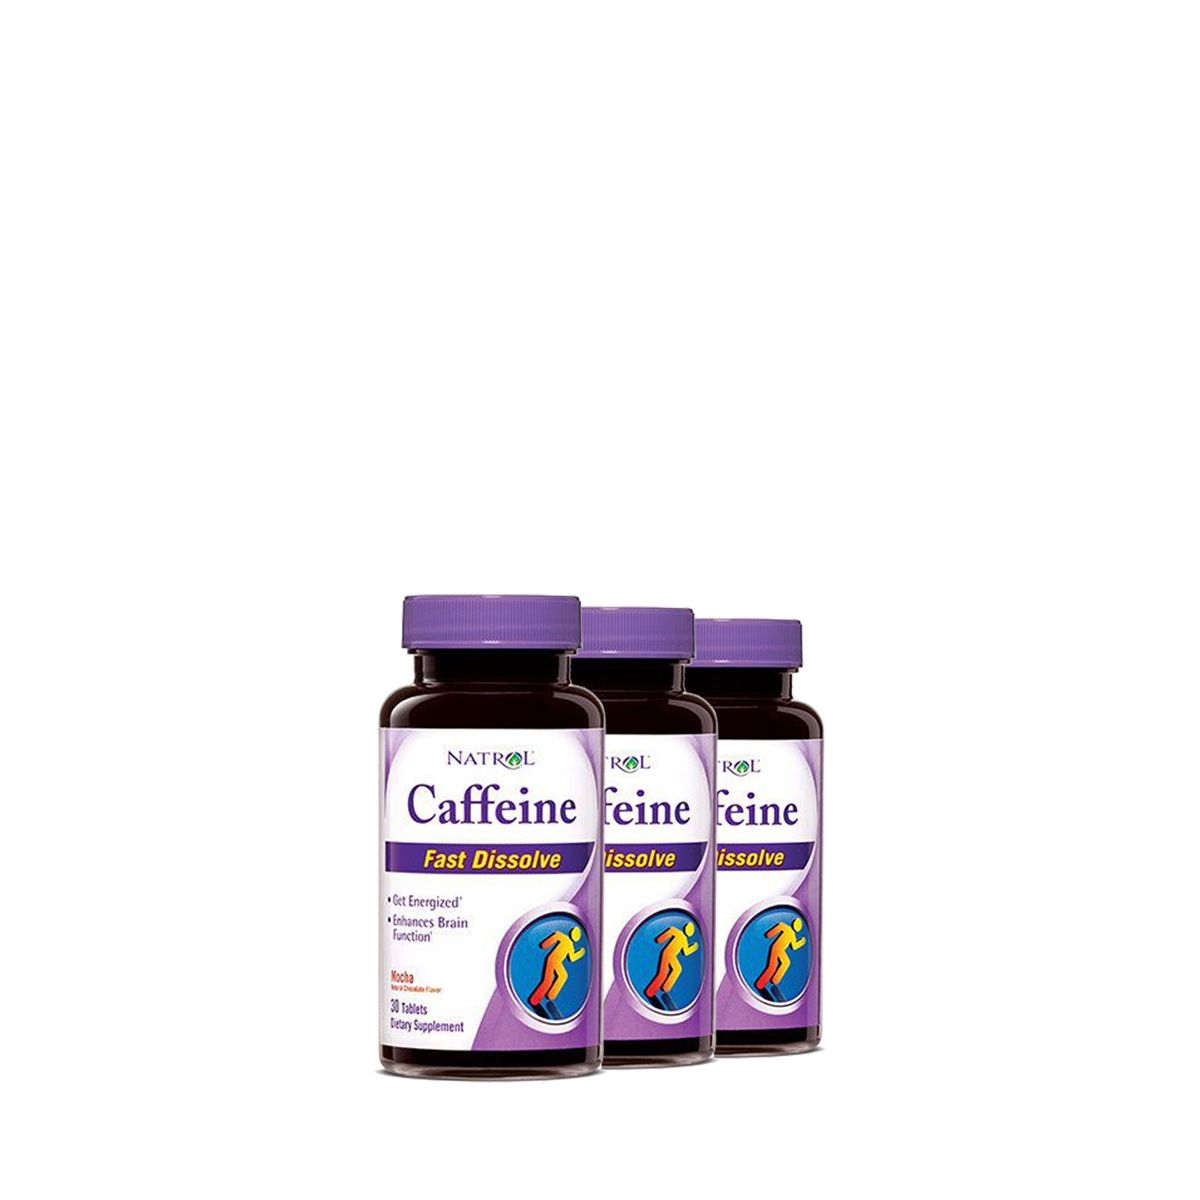 Gyors felszívódású koffein 100 mg, Natrol Caffeine Fast Dissolve, 3x60 kapszula